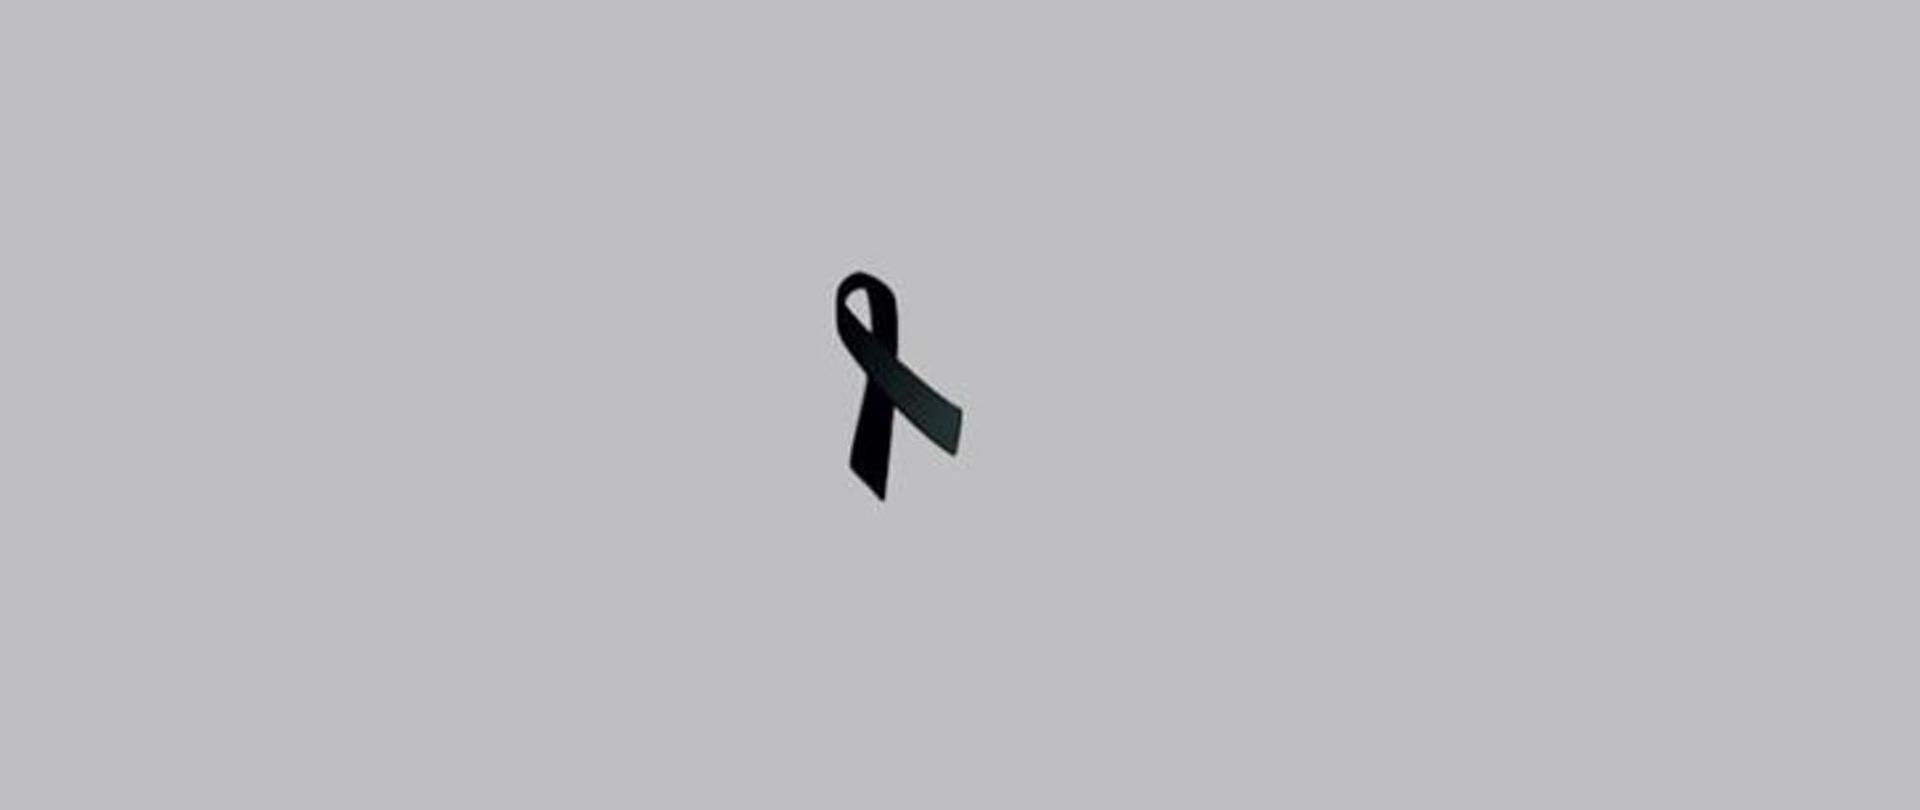 Czarna wstążka na szarym tle – symbol używany przez poszczególnych ludzi i organizacje, oznaczający żałobę.